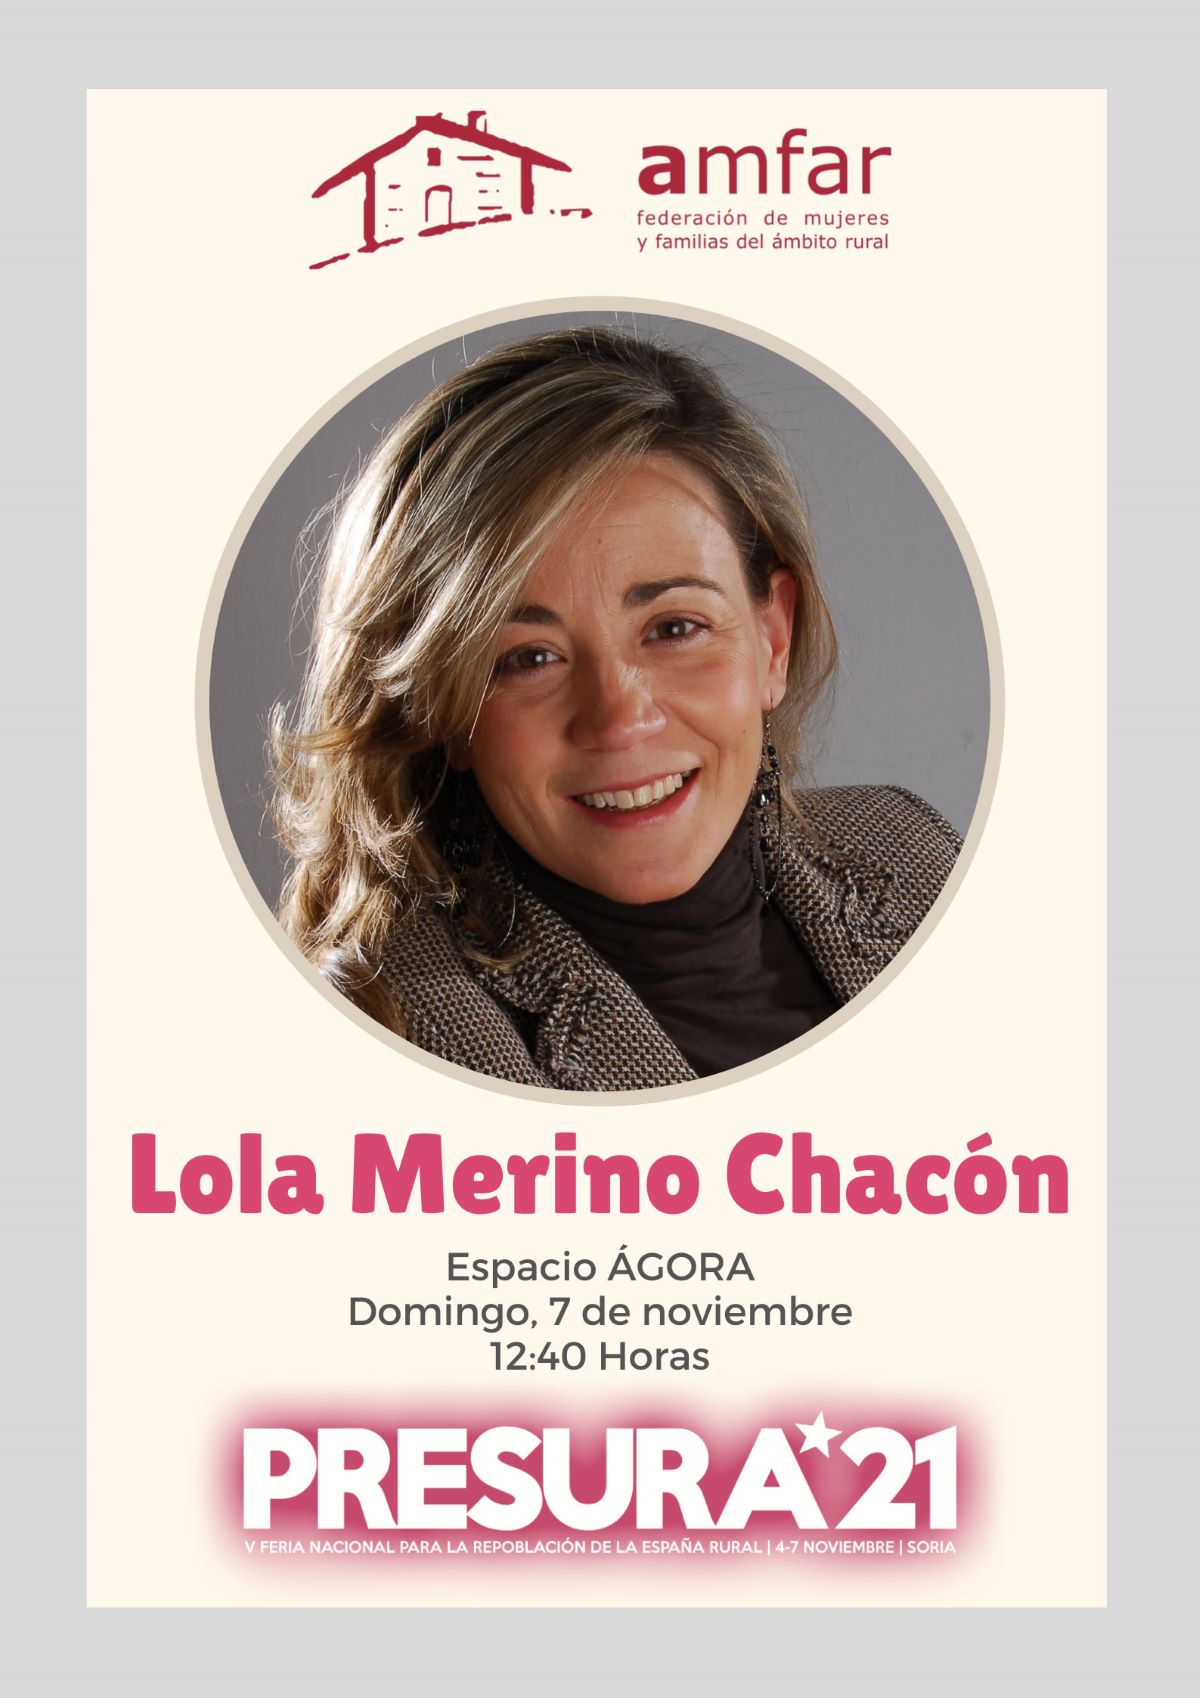 Lola Merino participa en PRESURA 21, Feria Nacional para la Repoblación de la España Rural